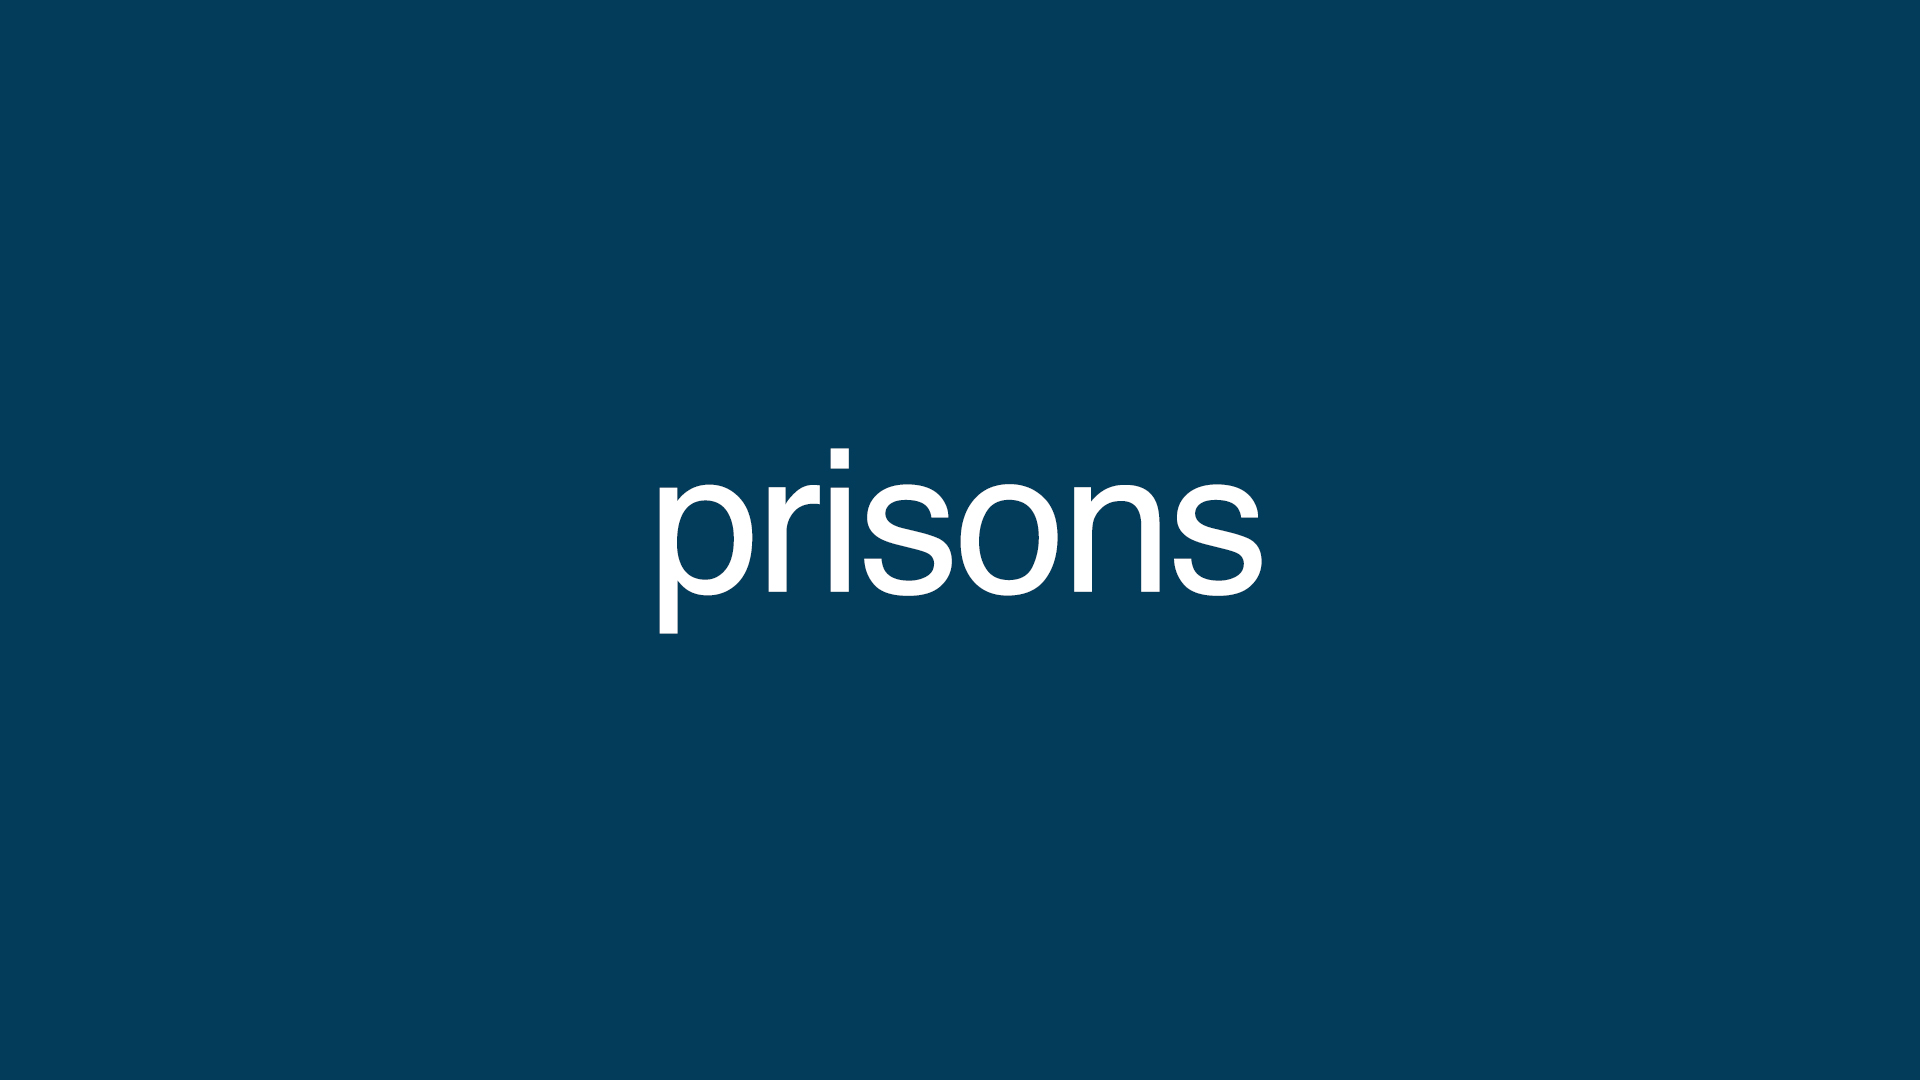 Prisons-1920x1080-op1